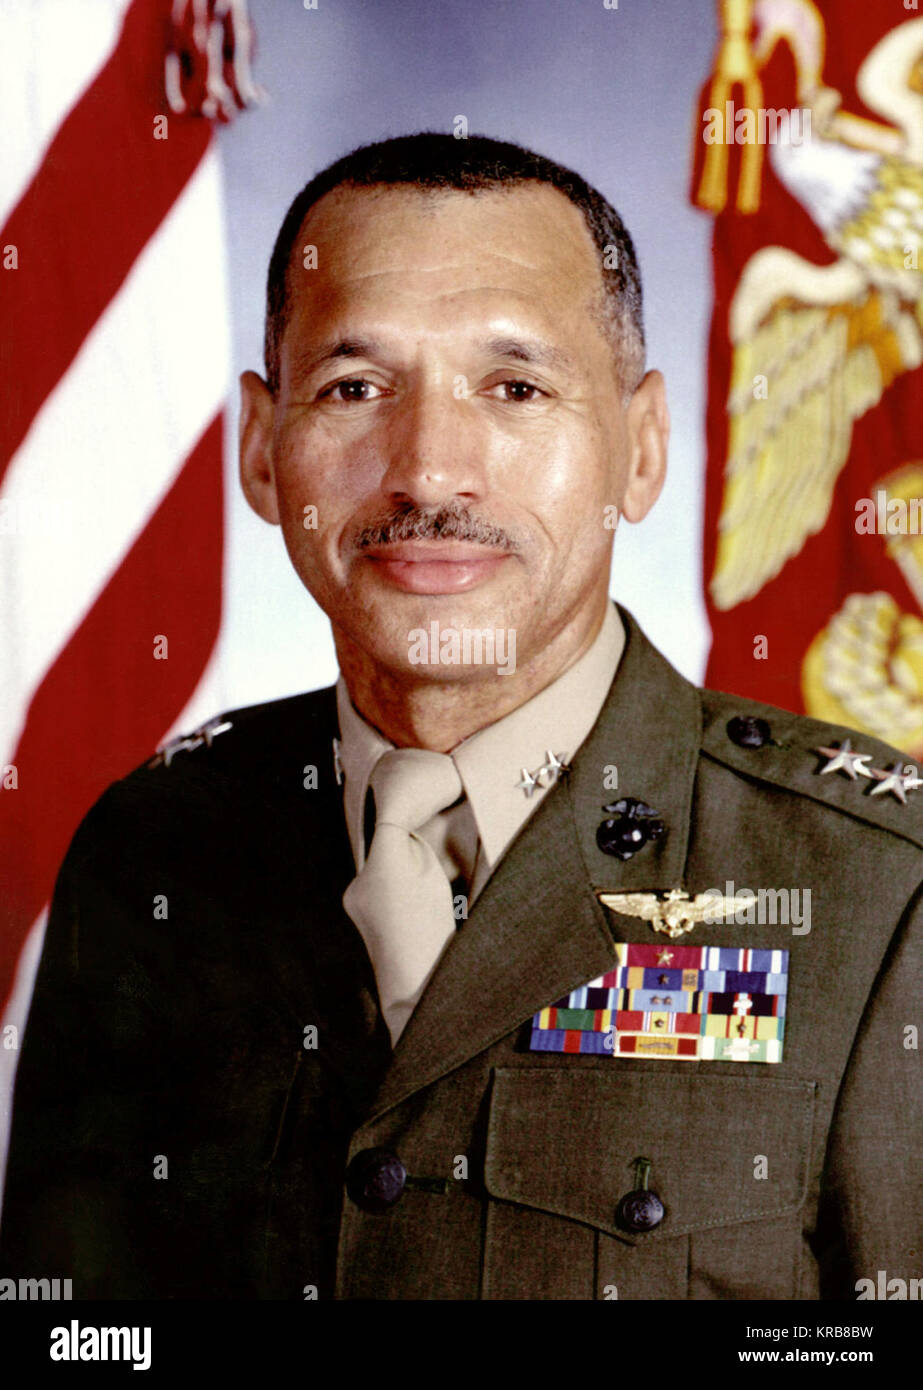 Retrato oficial Mayor General Charles F. Bolden Jr., Comandante General Adjunto, la Primera Fuerza Expedicionaria de la Marina. Mayor General Charles F. Bolden Jr. en 1997 Foto de stock